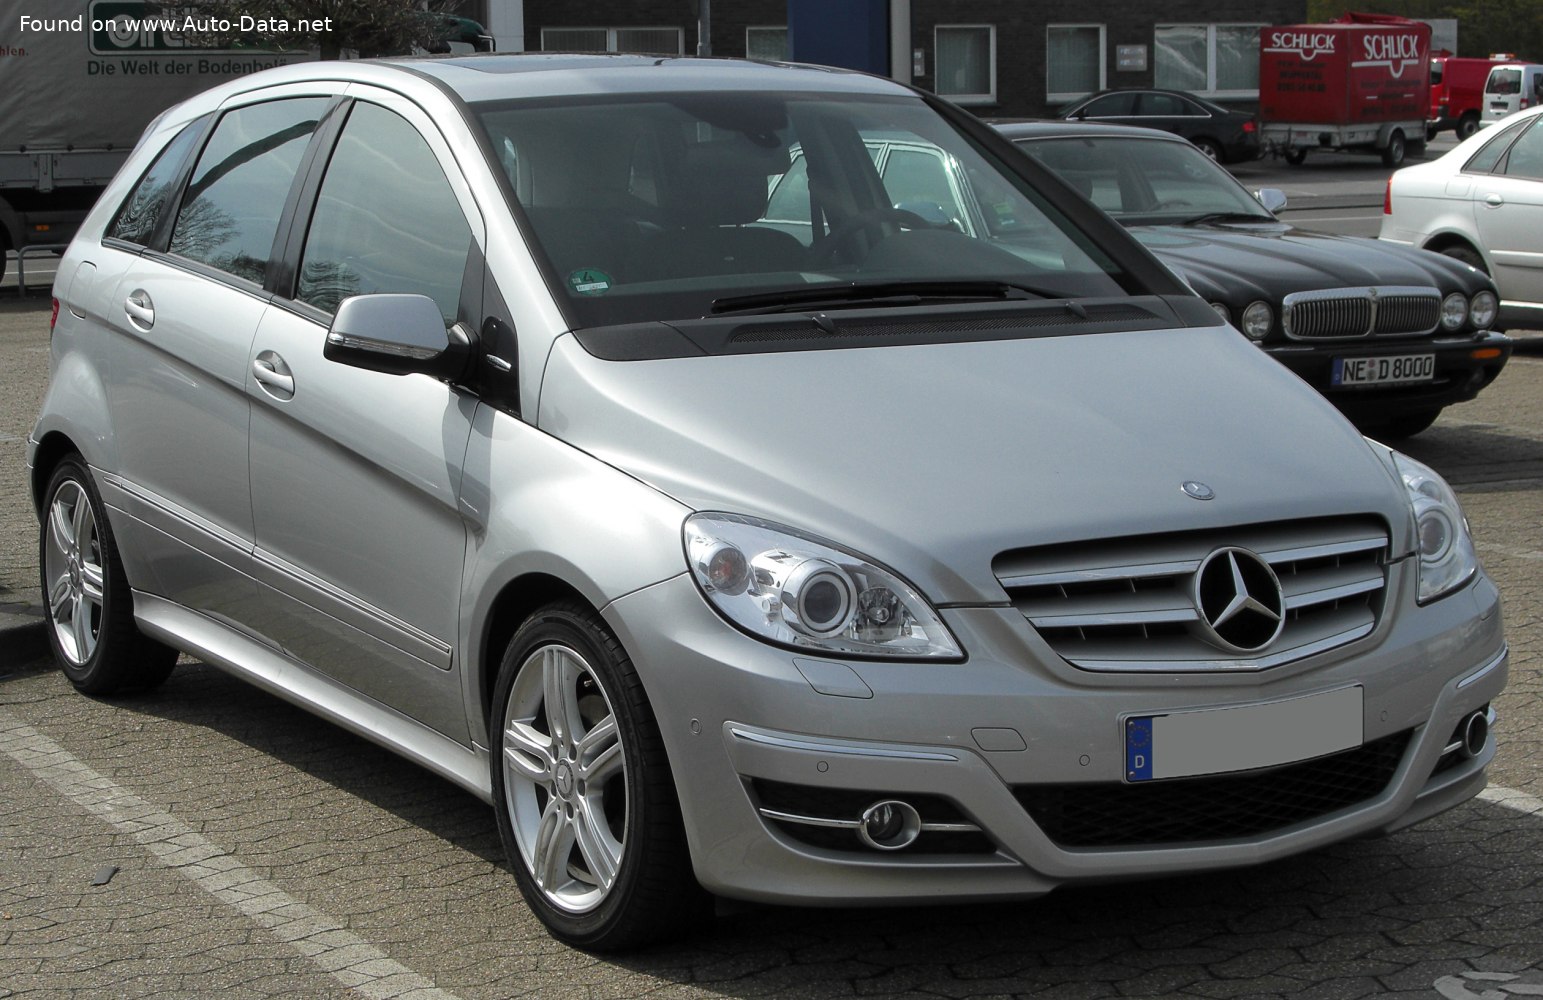 https://www.auto-data.net/images/f125/Mercedes-Benz-B-class-W245-facelift-2008.jpg